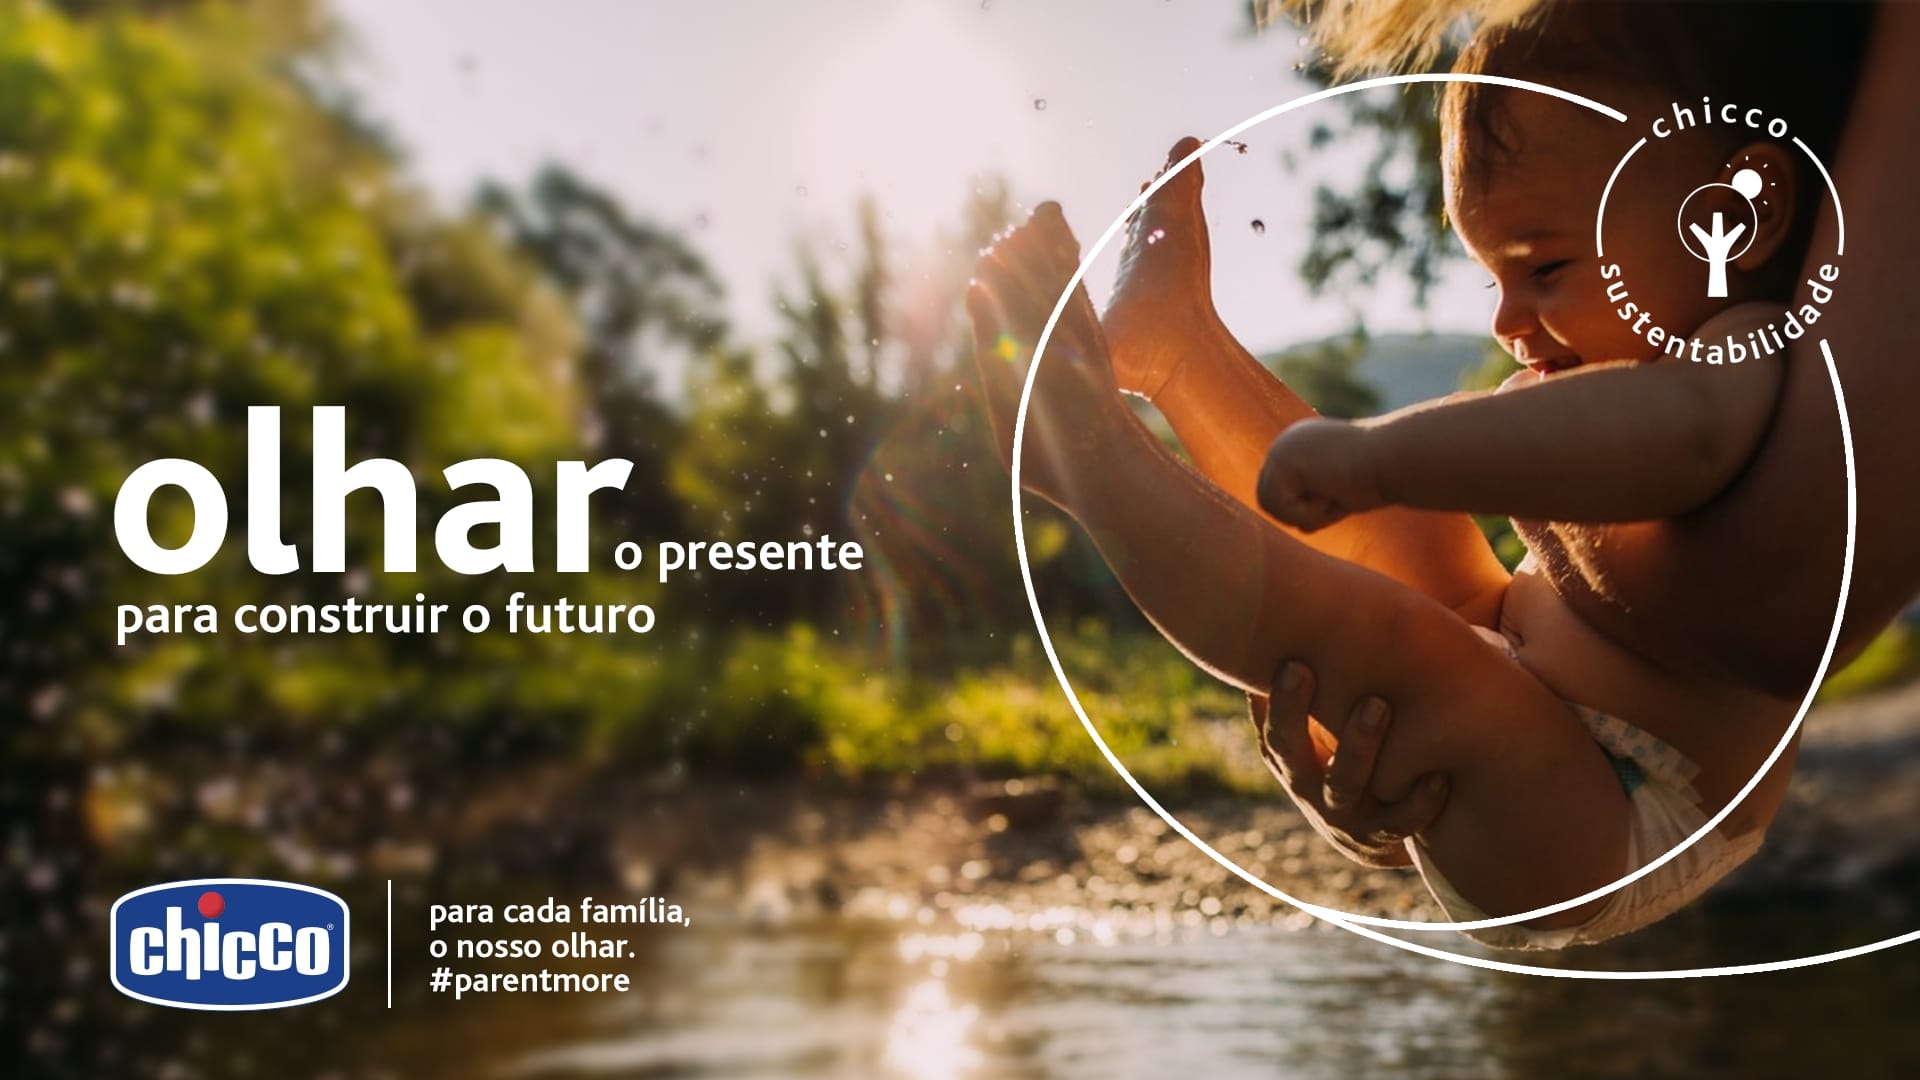 Chicco Brasil reforça o conceito #parentmore em campanha